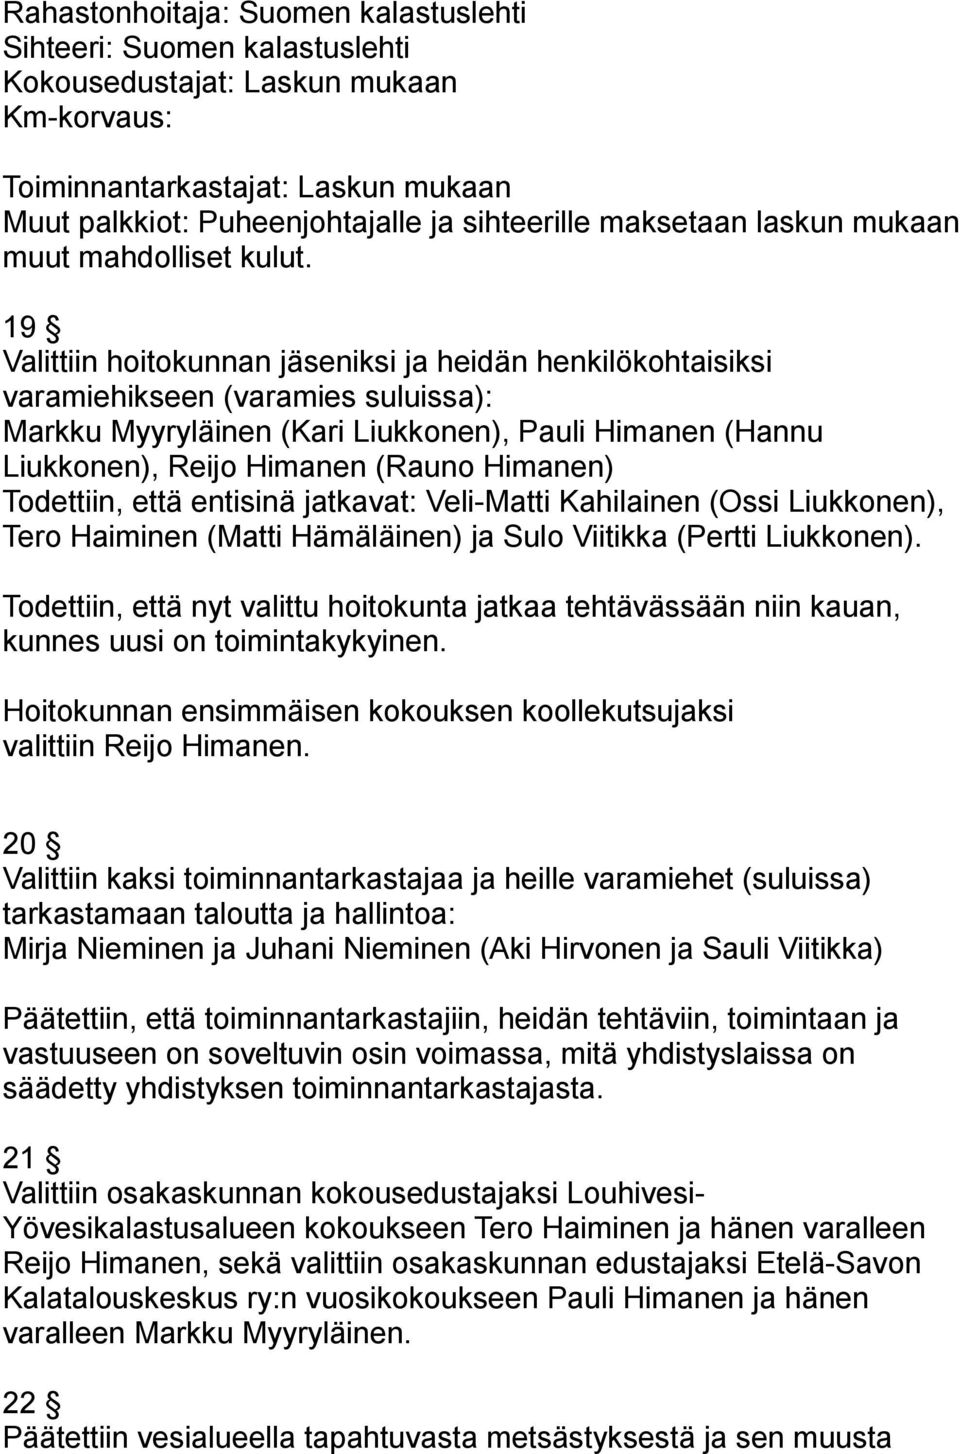 19 Valittiin hoitokunnan jäseniksi ja heidän henkilökohtaisiksi varamiehikseen (varamies suluissa): Markku Myyryläinen (Kari Liukkonen), Pauli Himanen (Hannu Liukkonen), Reijo Himanen (Rauno Himanen)